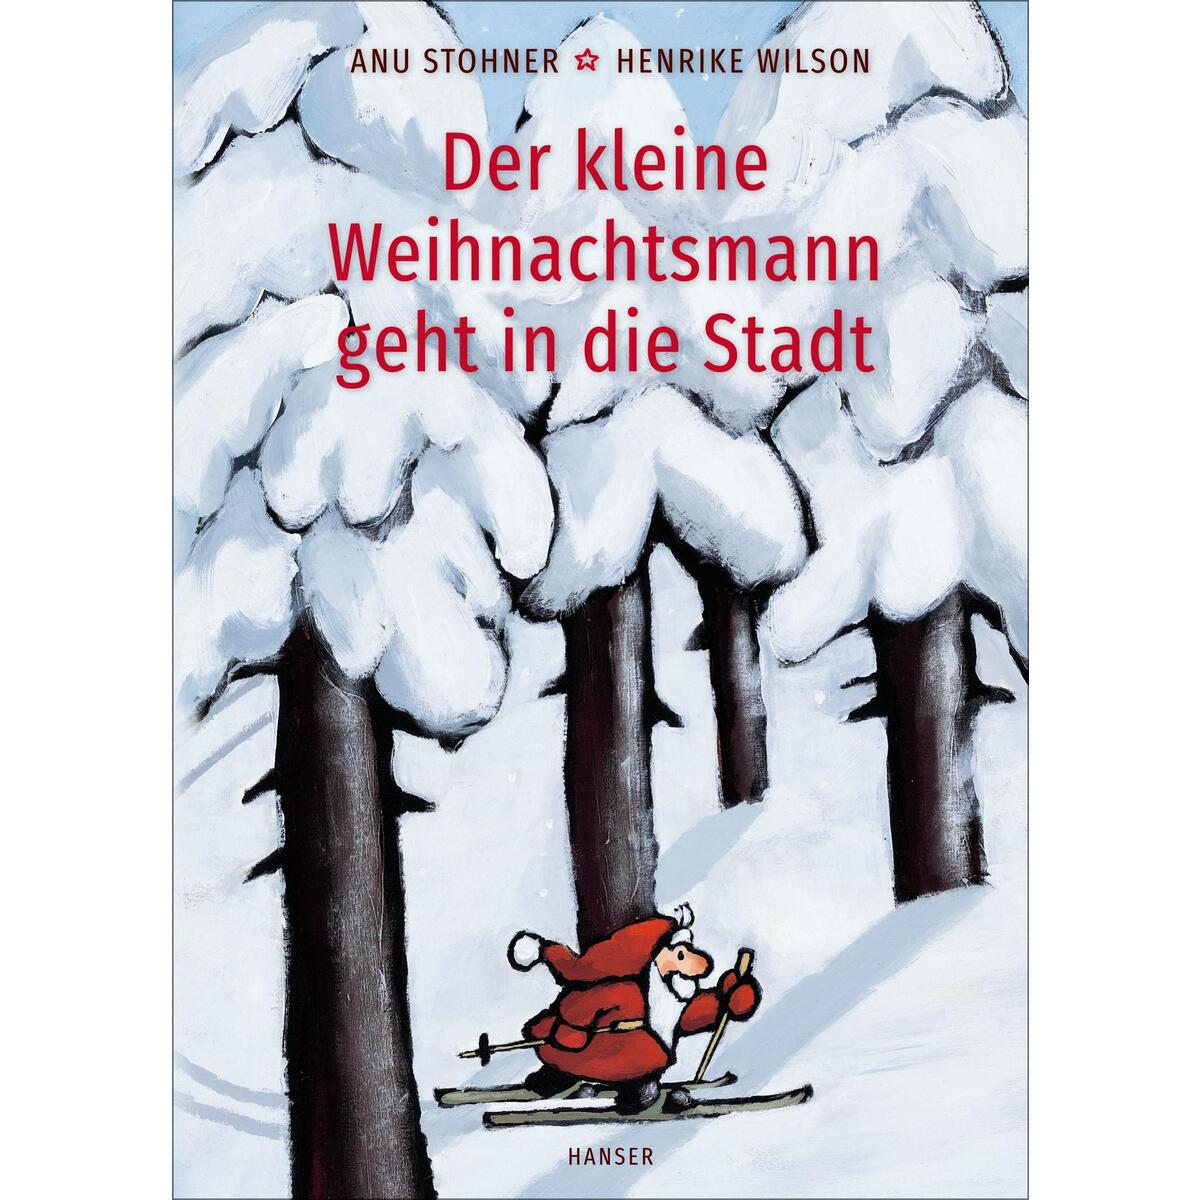 Der kleine Weihnachtsmann geht in die Stadt (Pappbilderbuch) von Carl Hanser Verlag